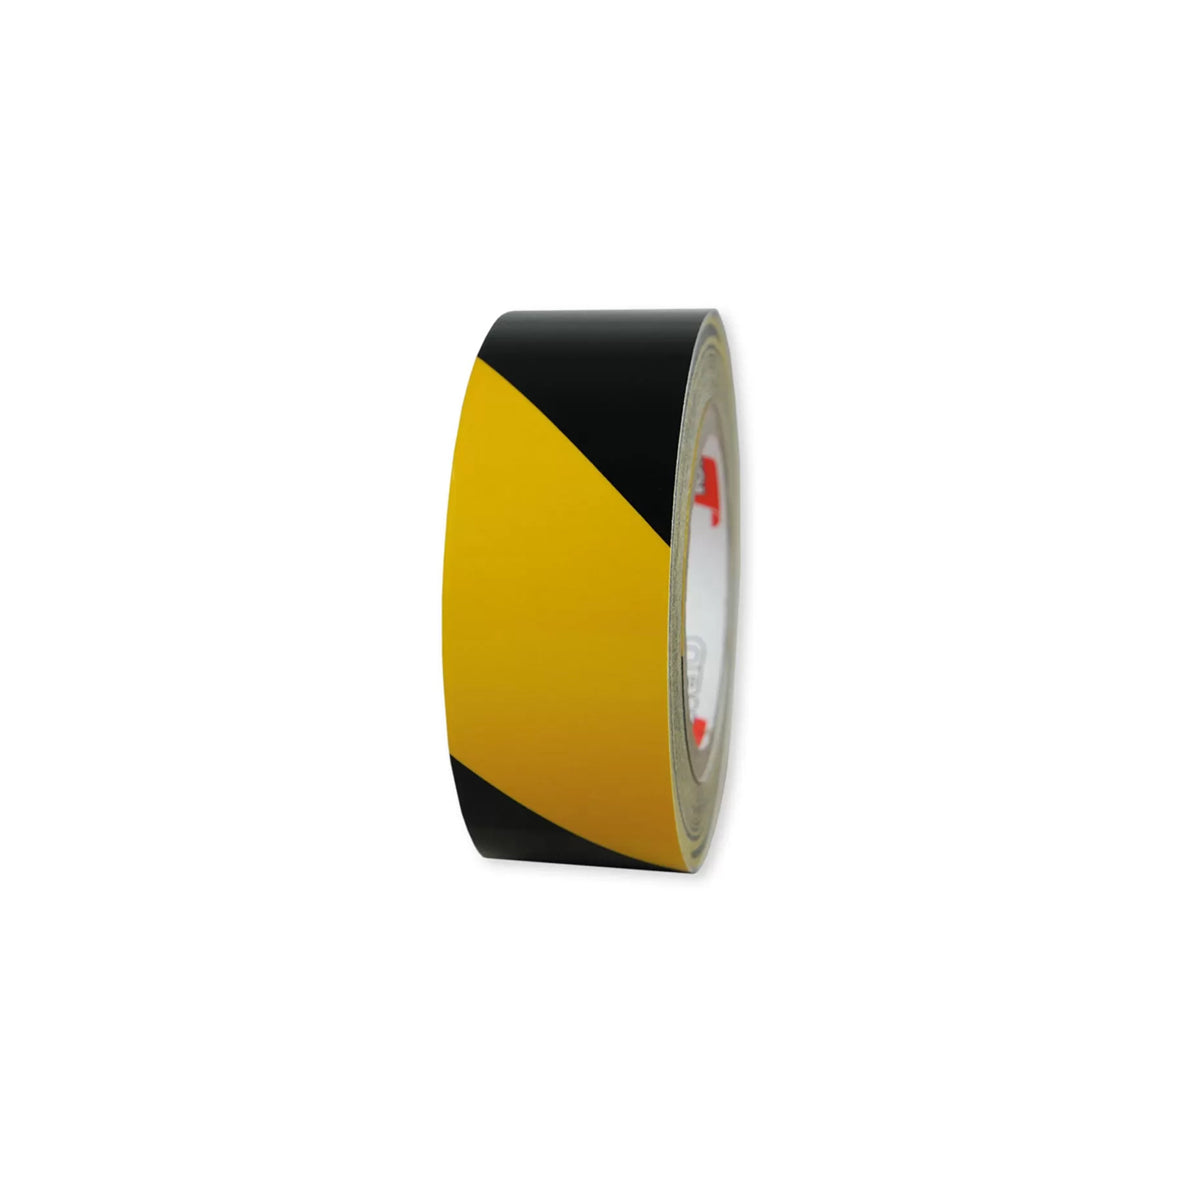 Warnmarkierungsband R1, für Fahrzeuge, R1, gelb-schwarz, 25 m x 100 mm, rechtsweisend